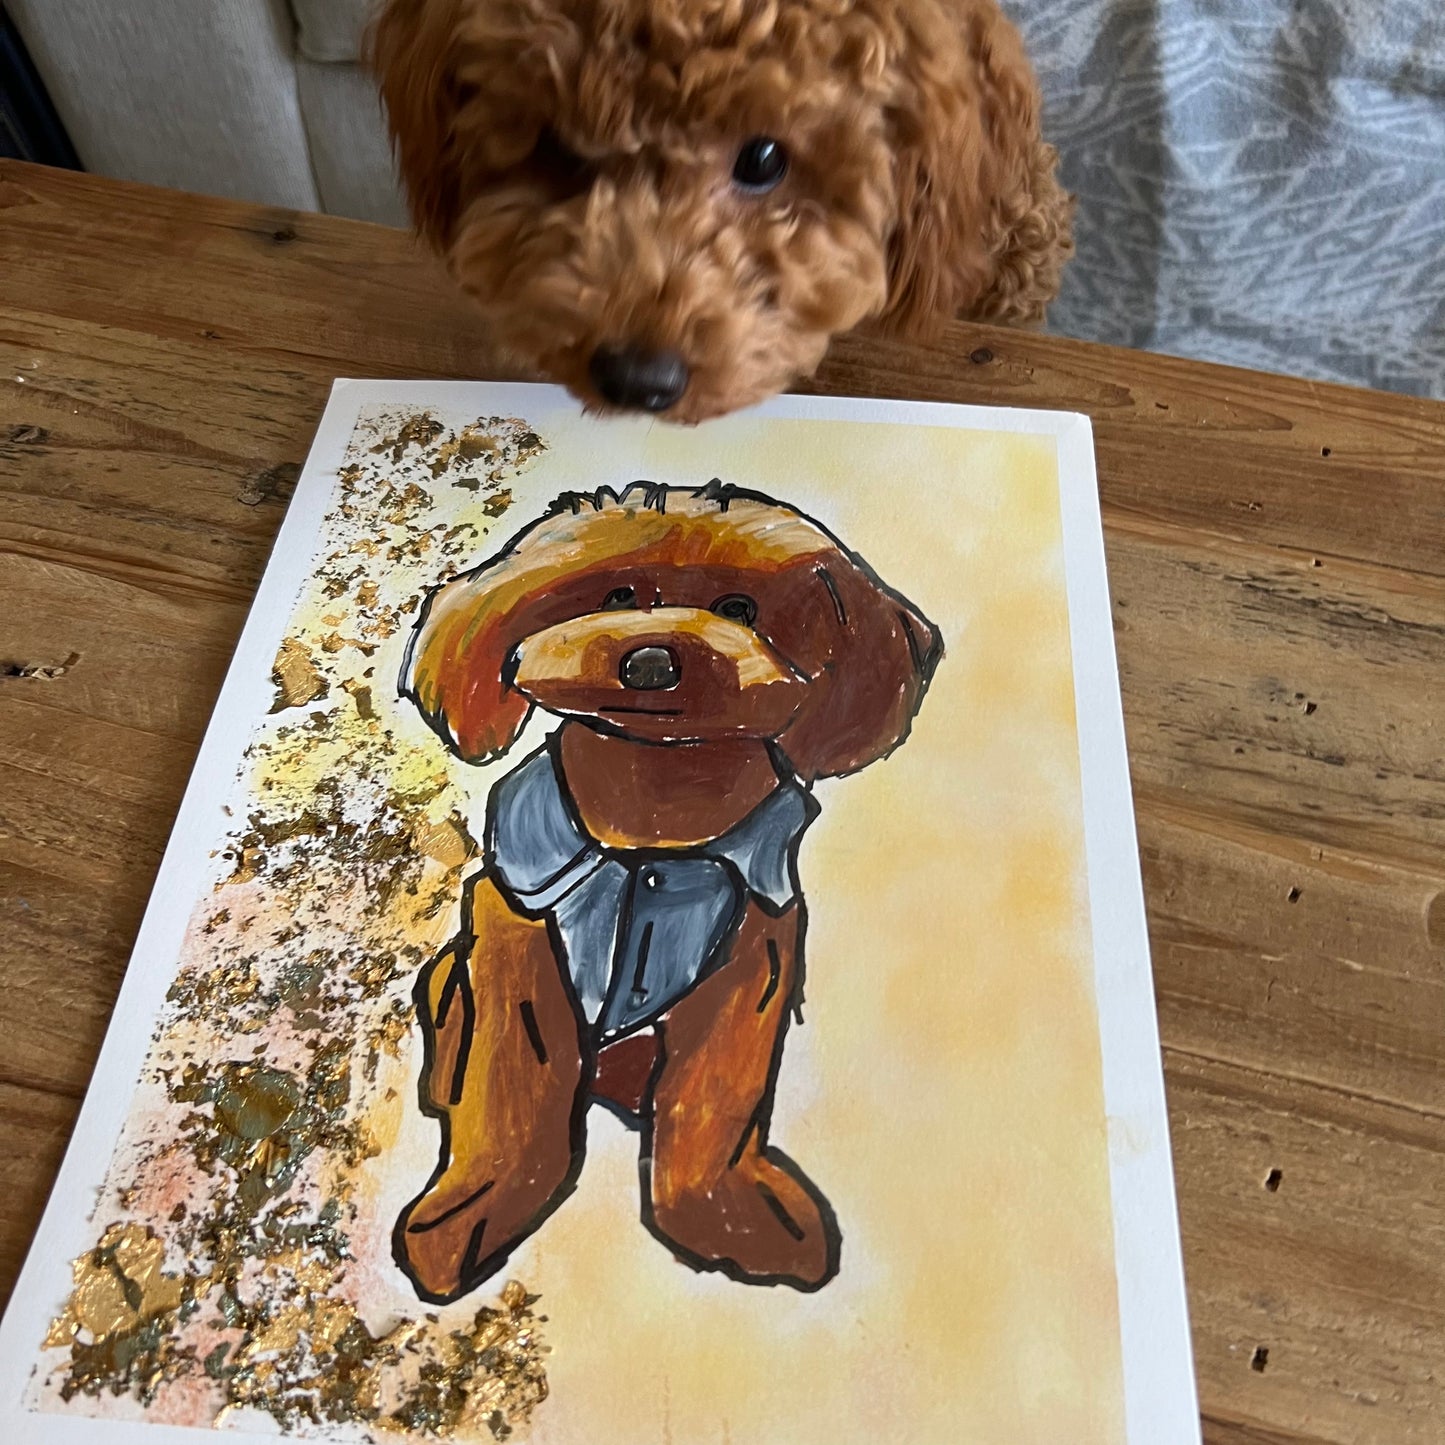 Toy Poodle - fine prints of original artwork